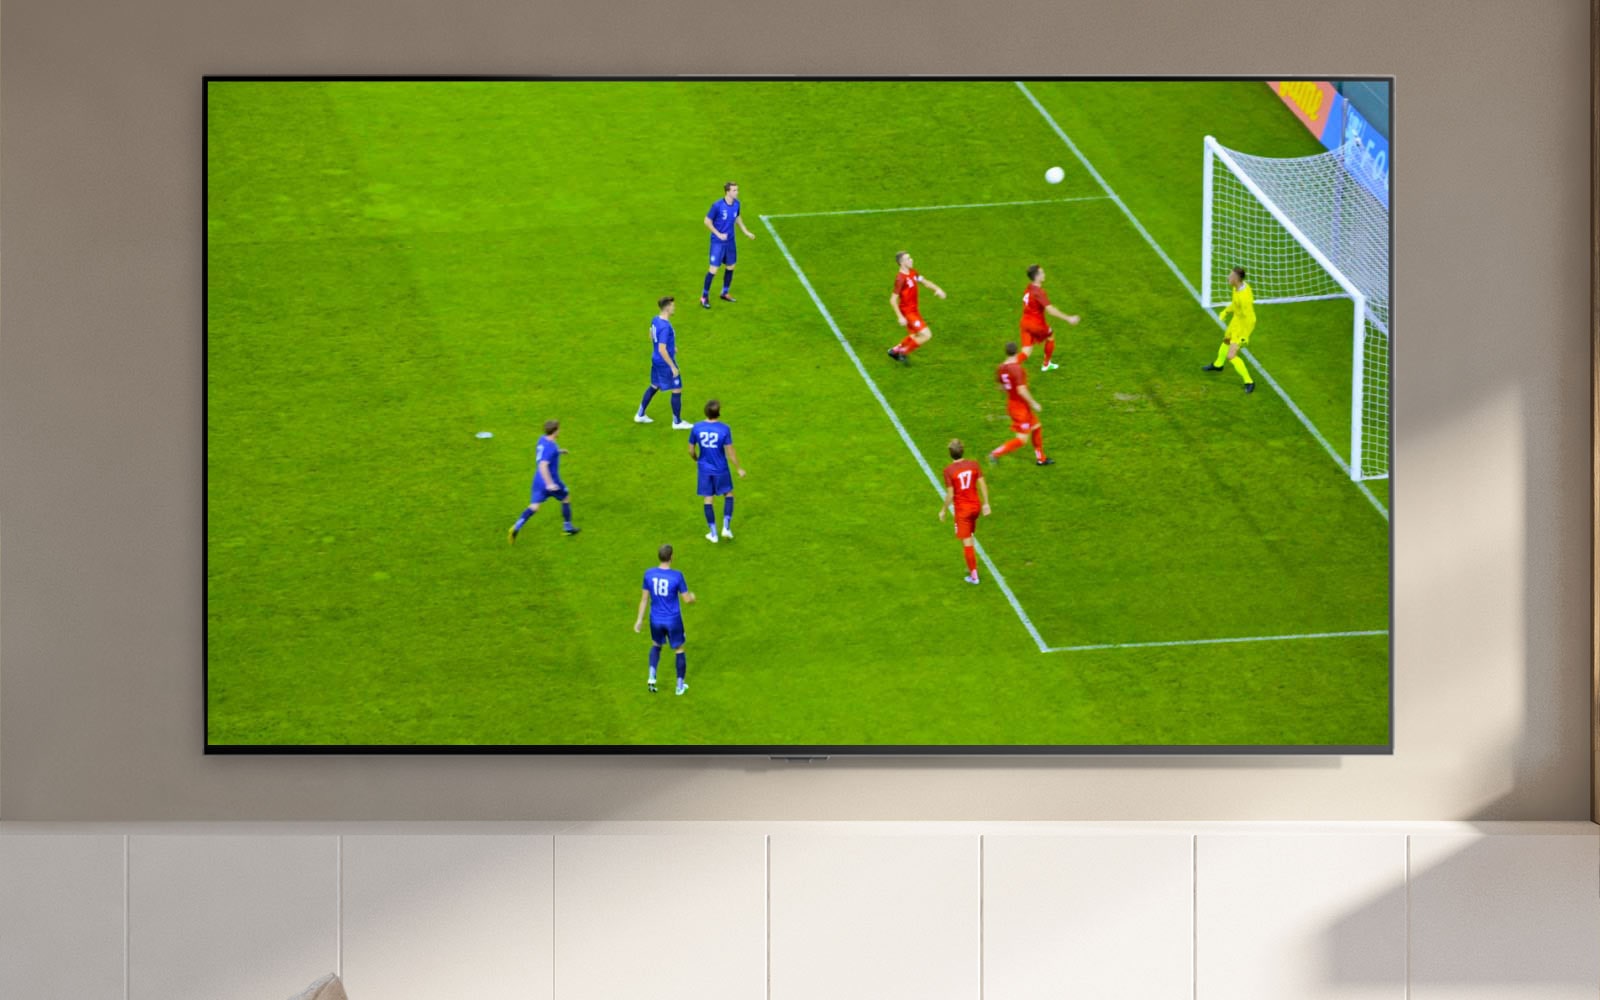 Μια οθόνη τηλεόρασης που δείχνει ένα γήπεδο ποδοσφαίρου και έναν παίκτη που σκοράρει (αναπαραγωγή βίντεο).